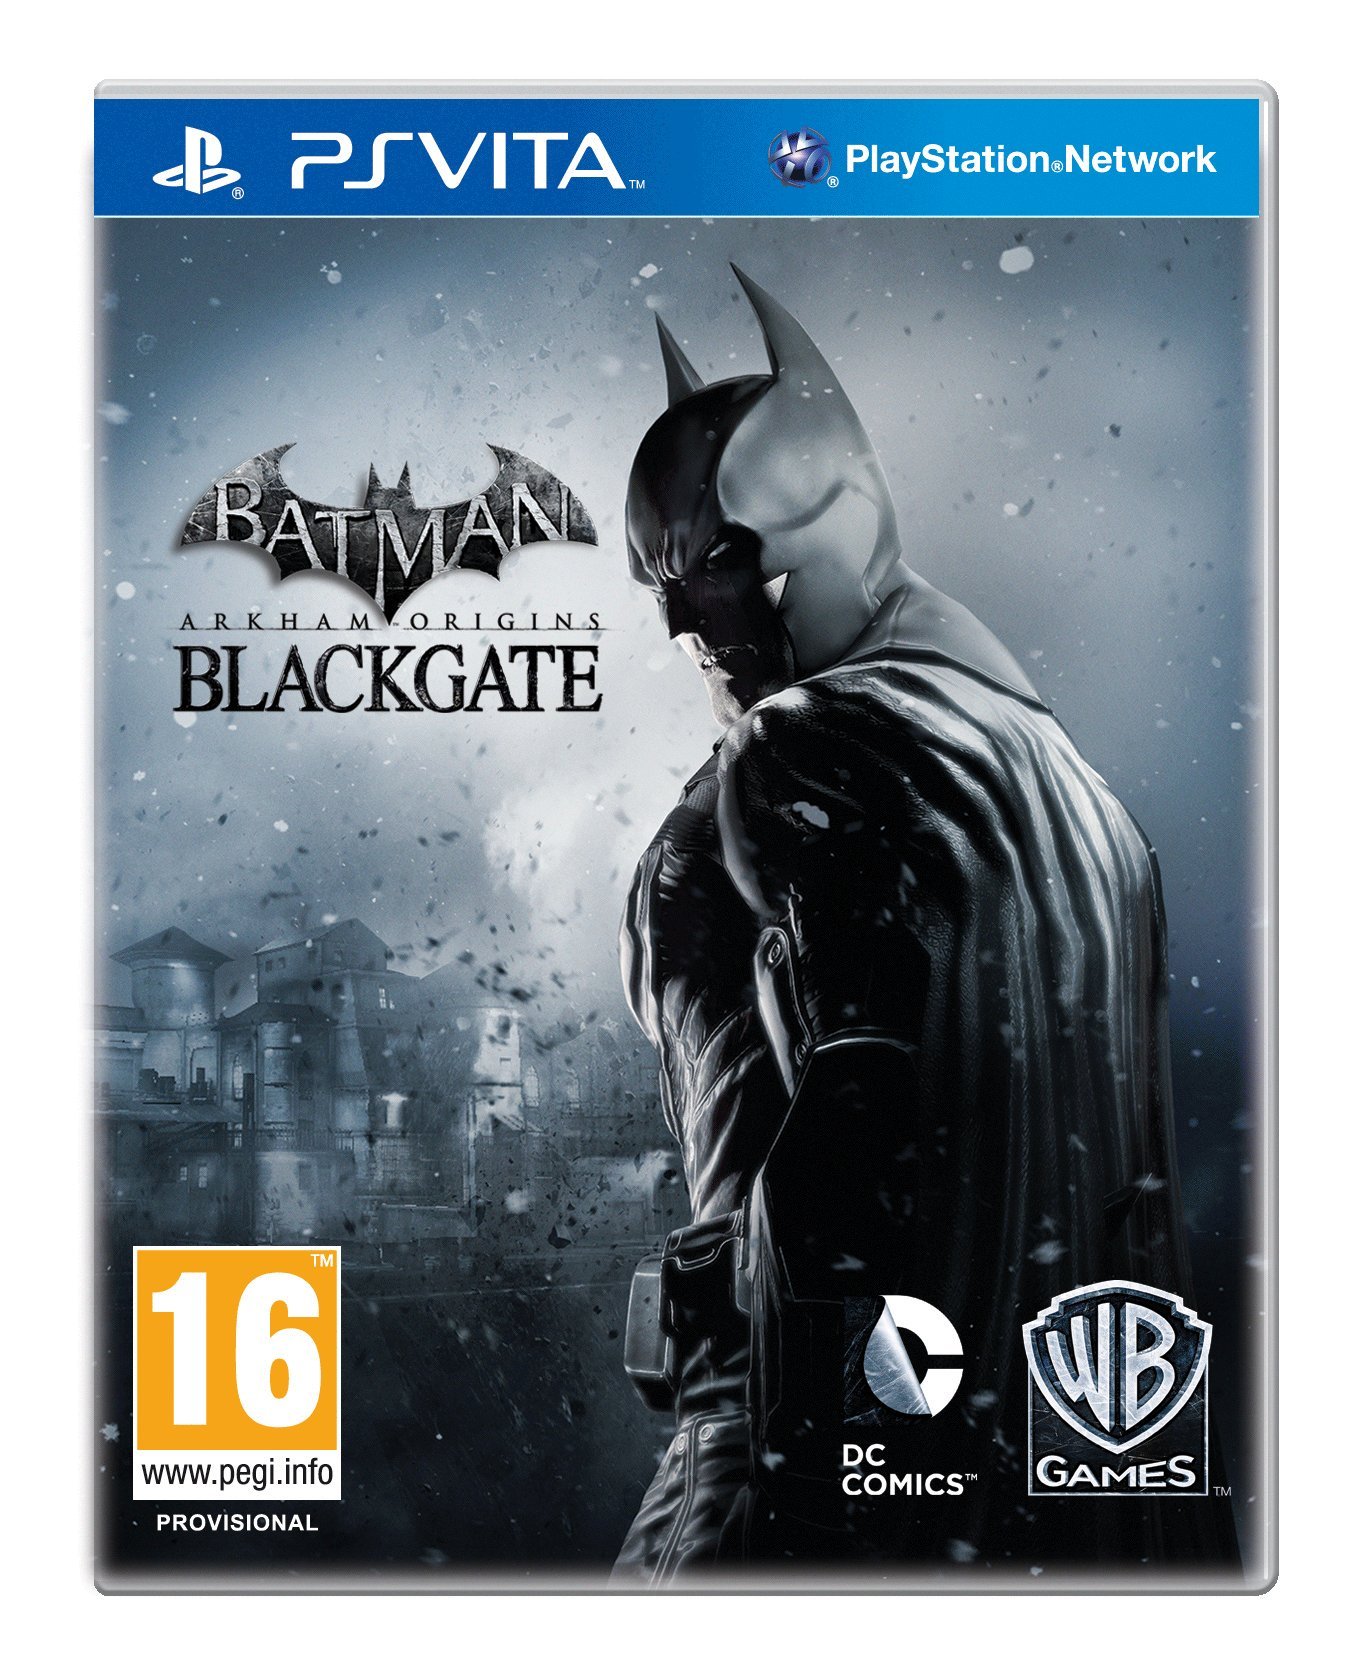 Batman vita. Batman Arkham Origins Blackgate 3ds. Диск Batman Arkham Origins Blackgate. Batman: Arkham Origins Blackgate Nintendo 3ds. Batman Arkham Origins ps3.